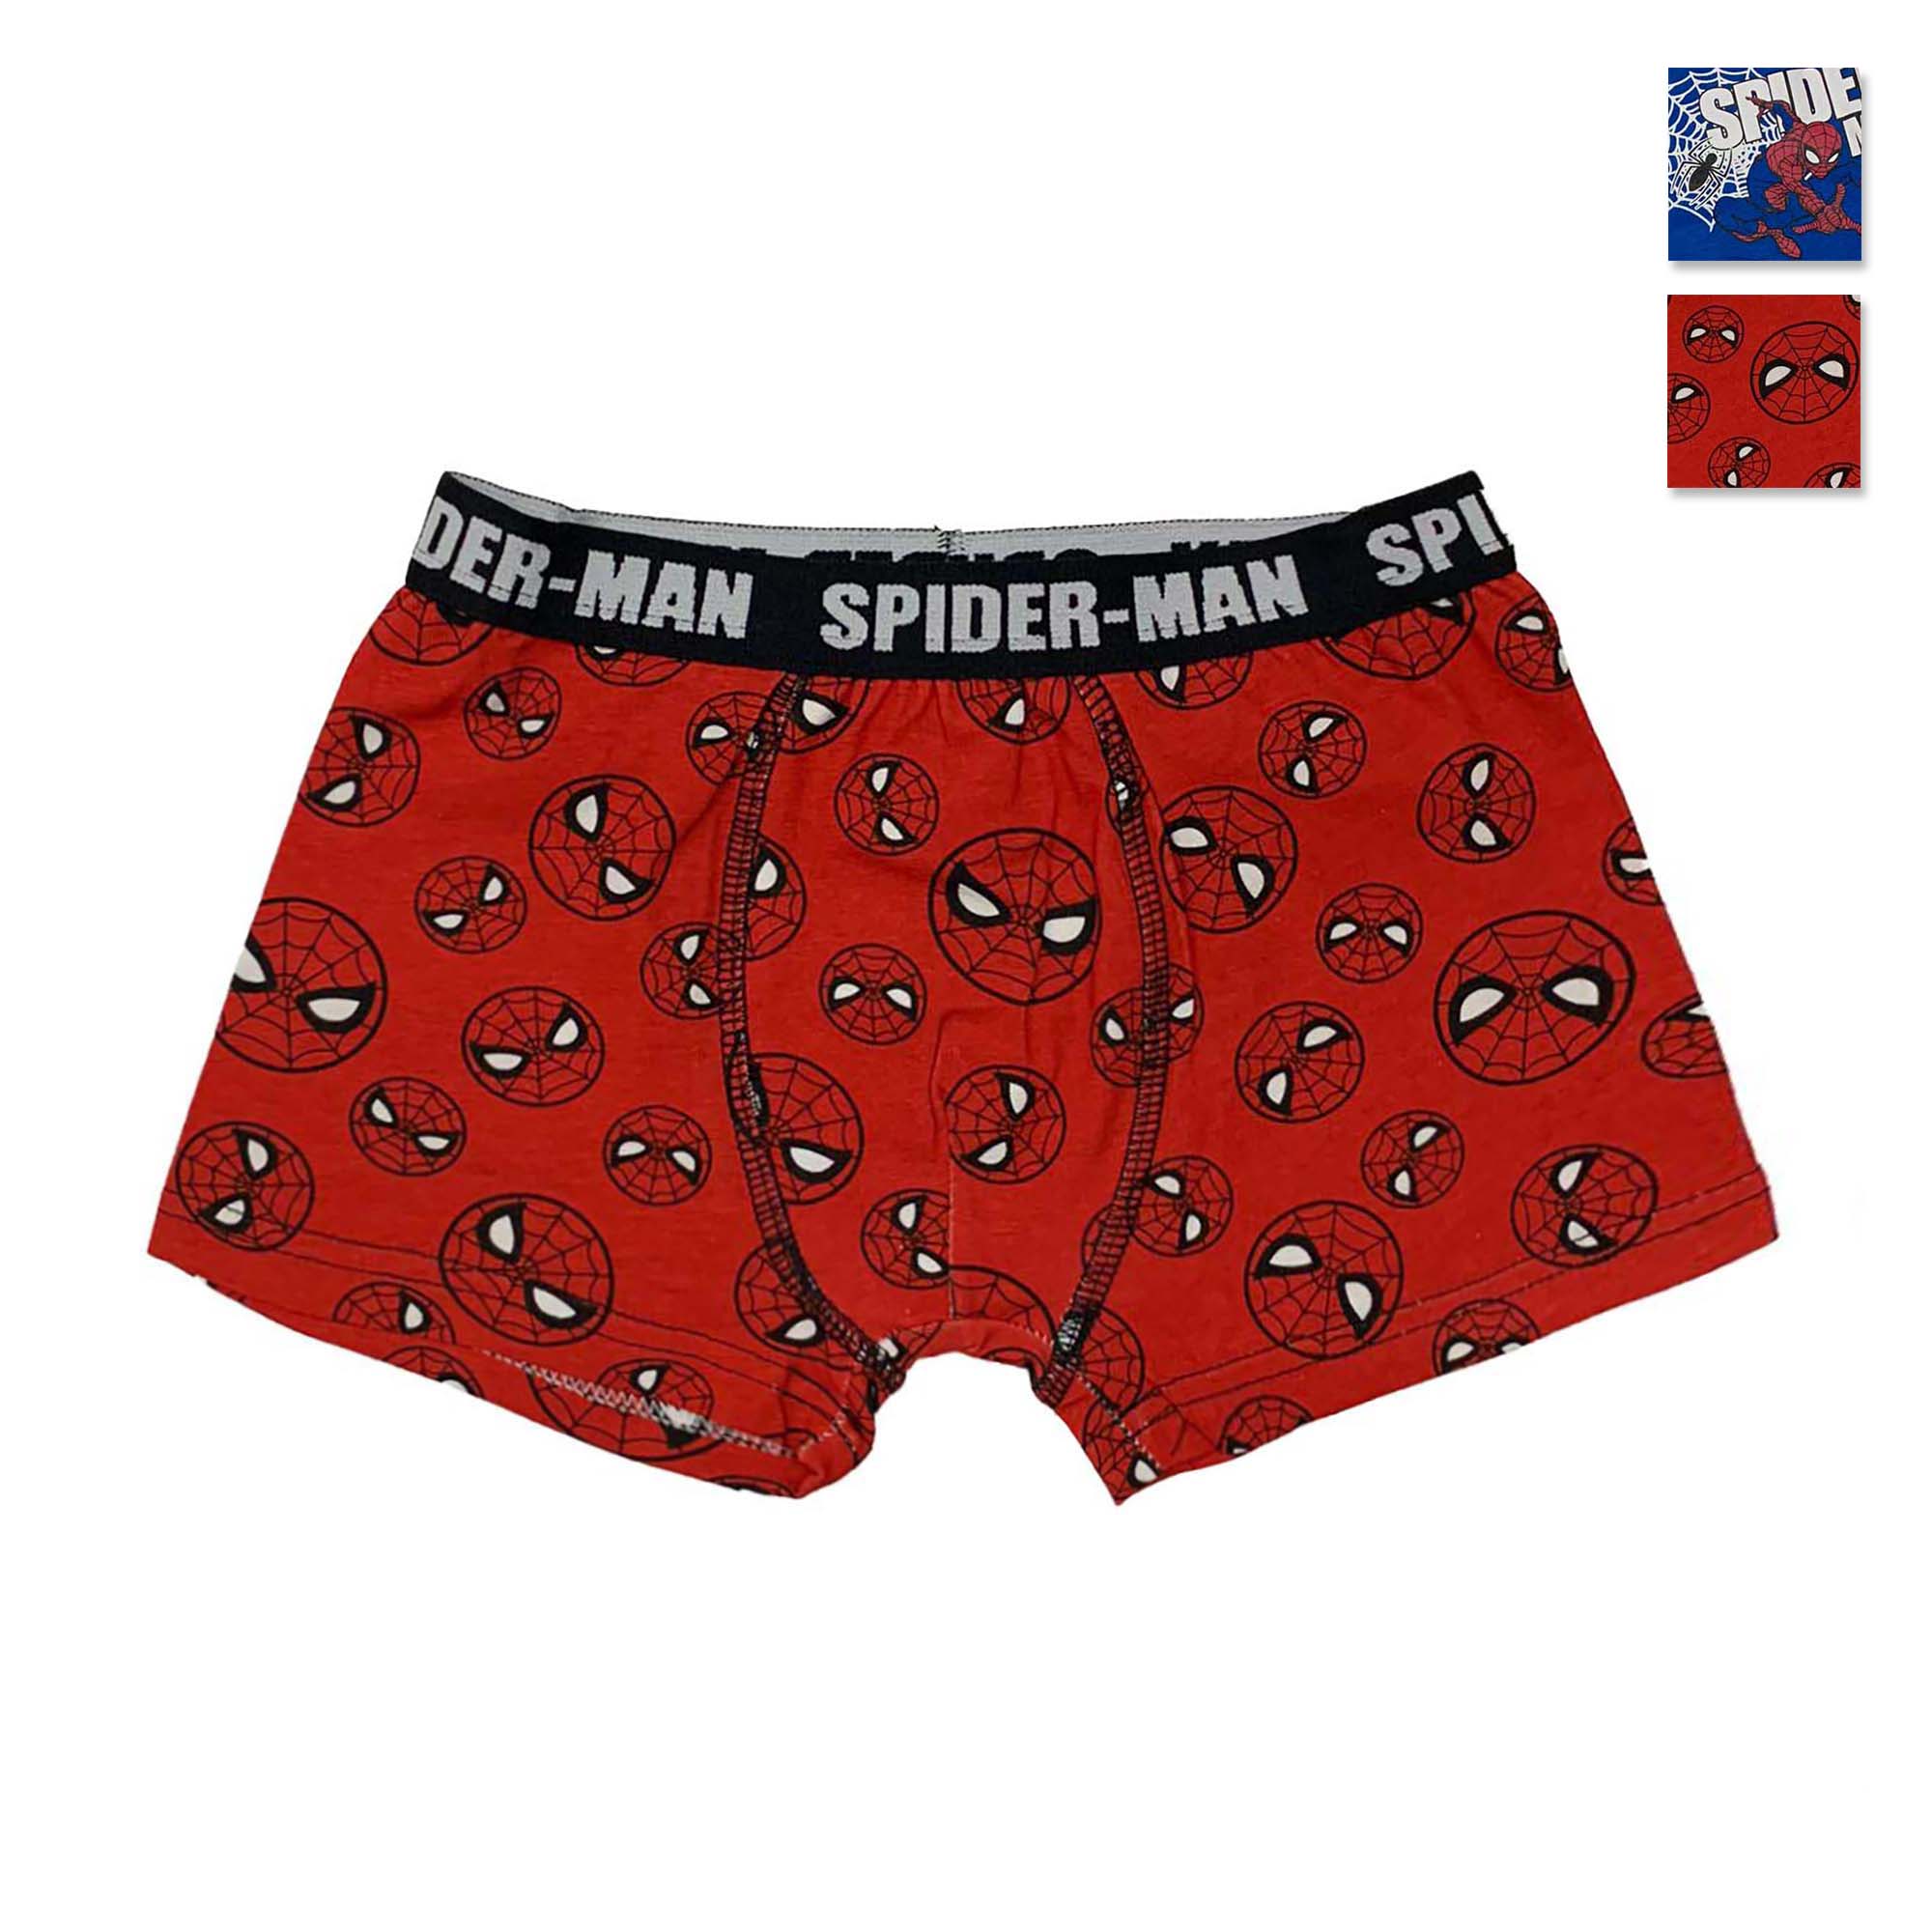 Boxer Marvel Spiderman bambino ragazzo ufficiale shorties mutandina intimo 4057